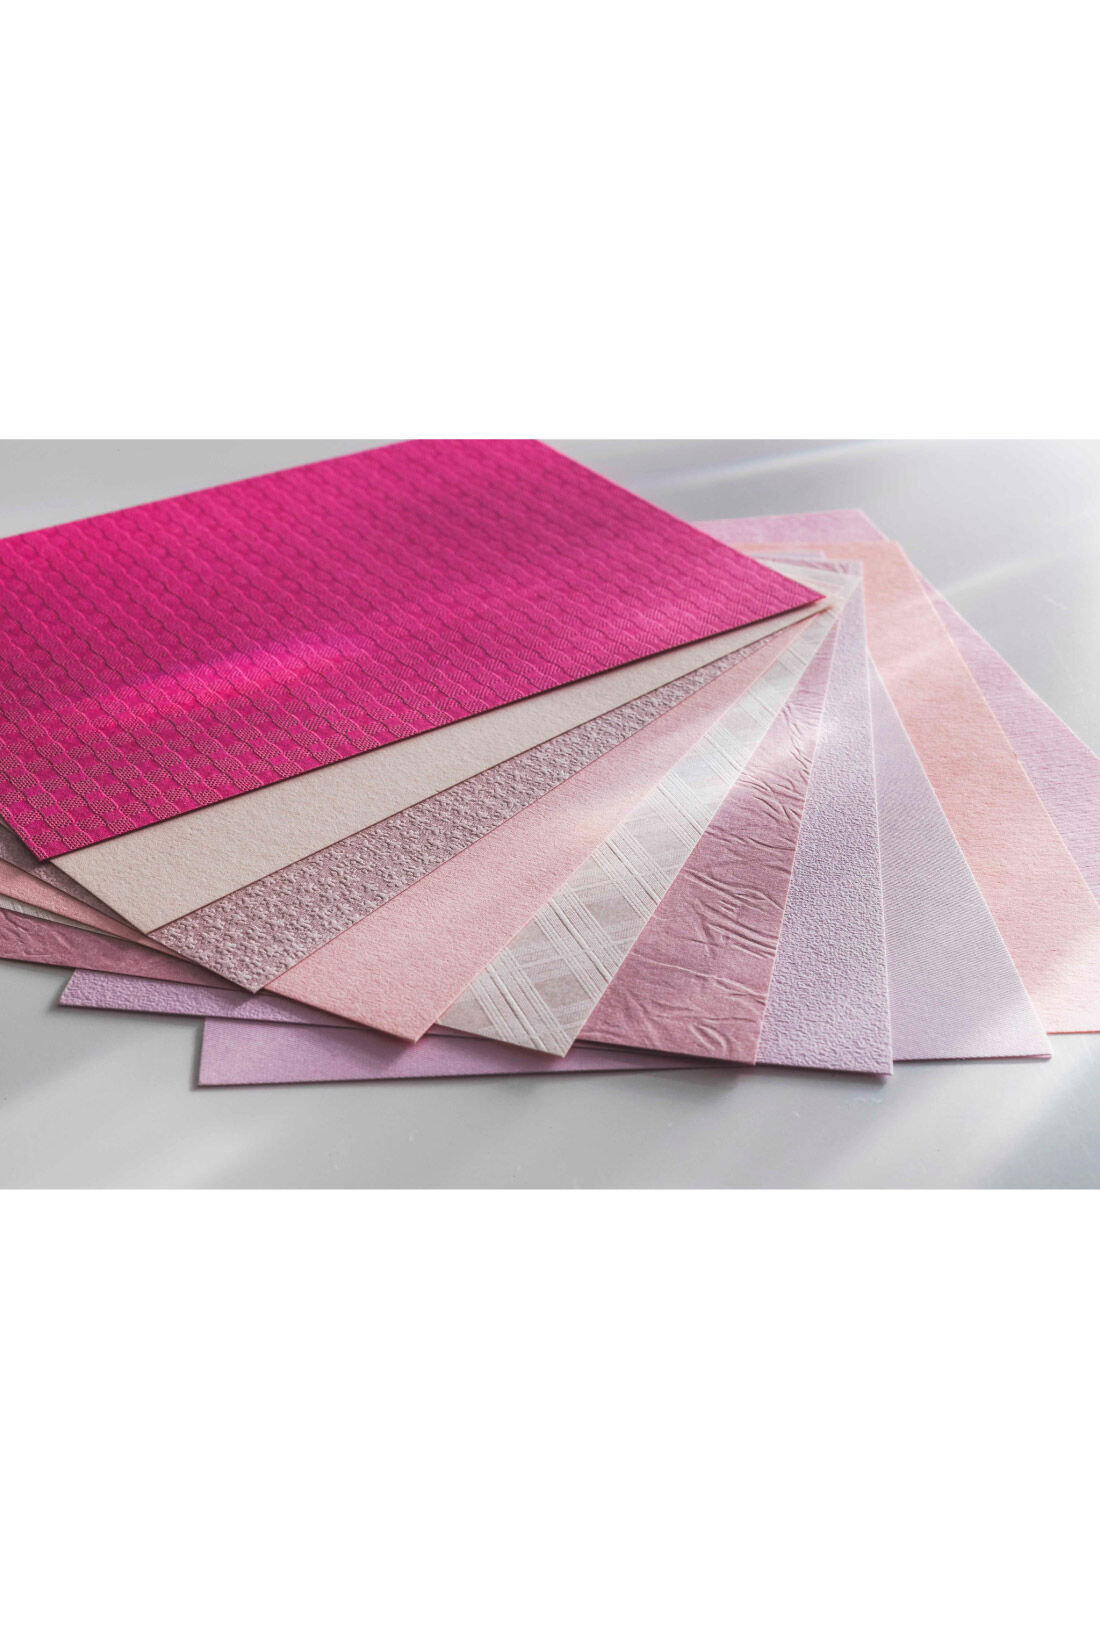 OSYAIRO|OSYAIRO 紙の専門商社竹尾が選ぶ　色を楽しむ紙セットの会〈桃〉|A6サイズの紙ははがき・カードとしても使えるように少し厚めです。